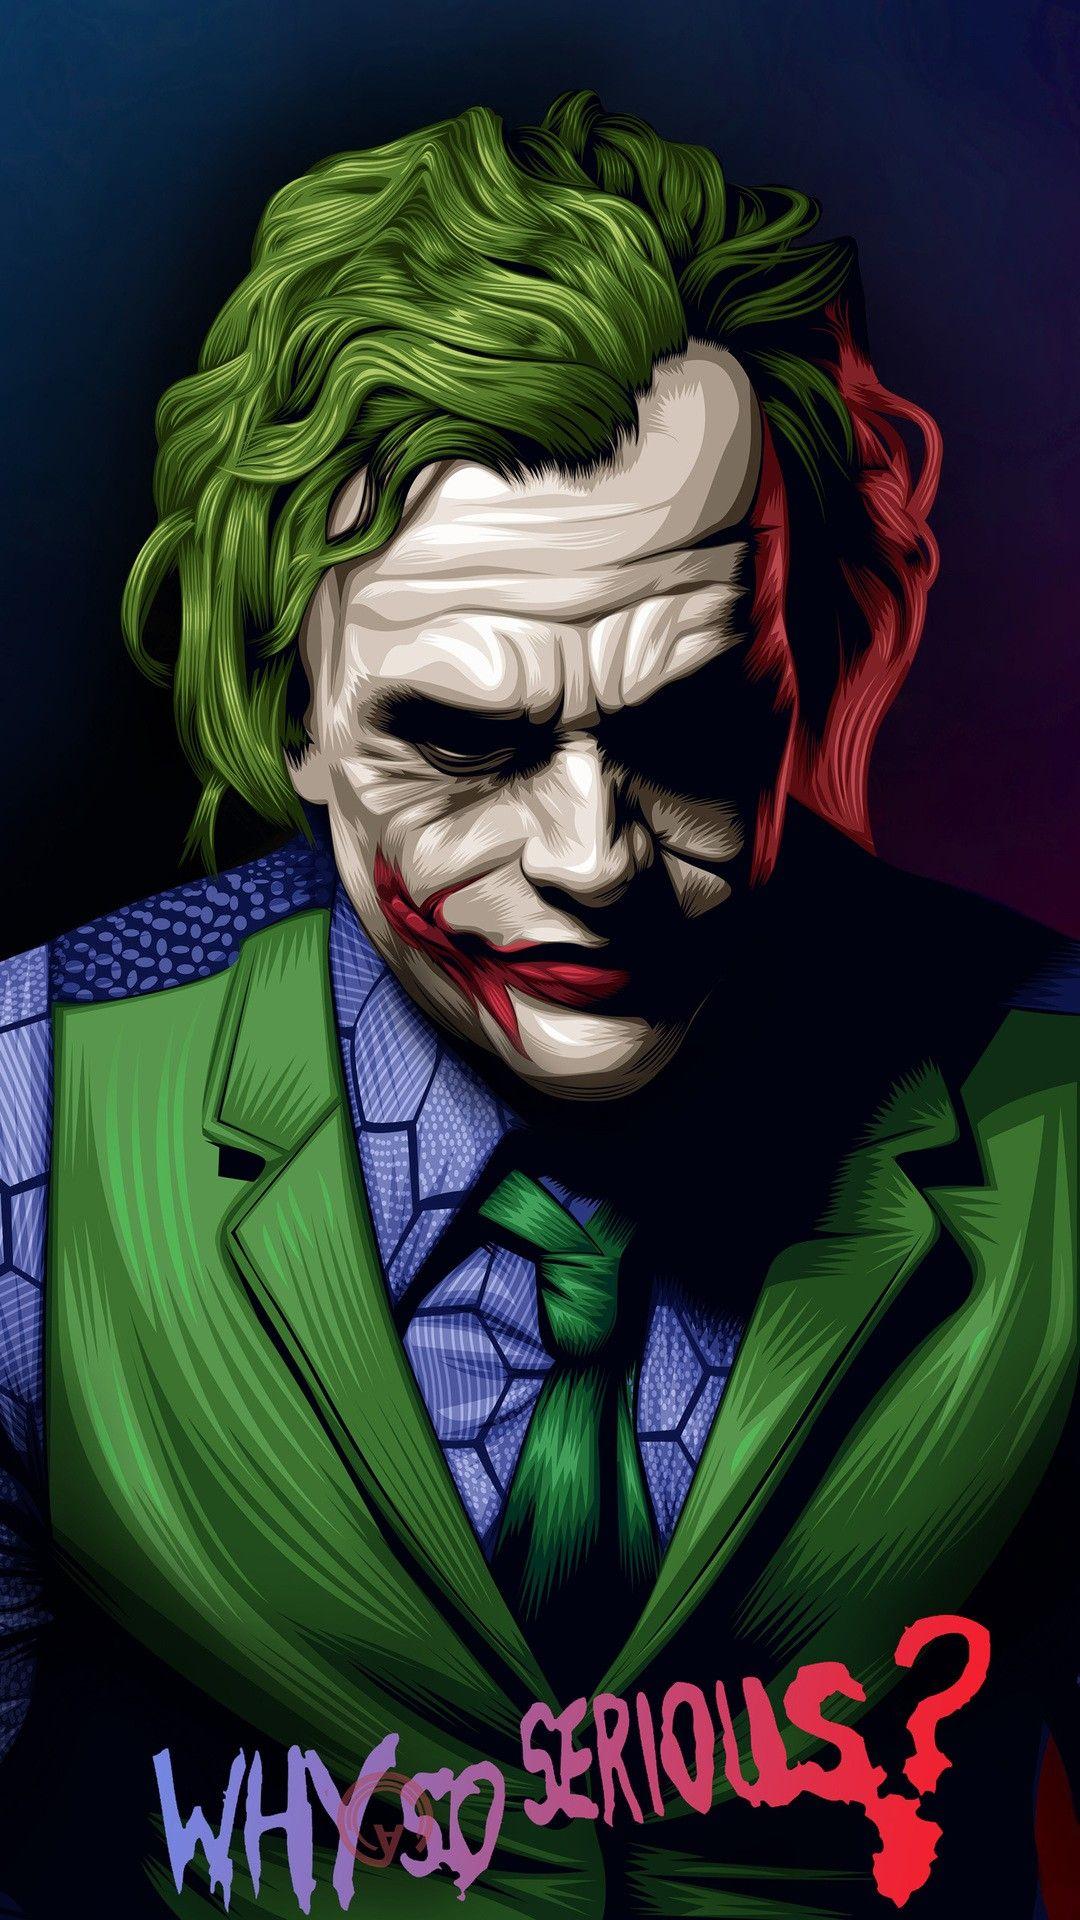 joker #marvel #dc. Joker wallpaper, Joker image, Joker comic